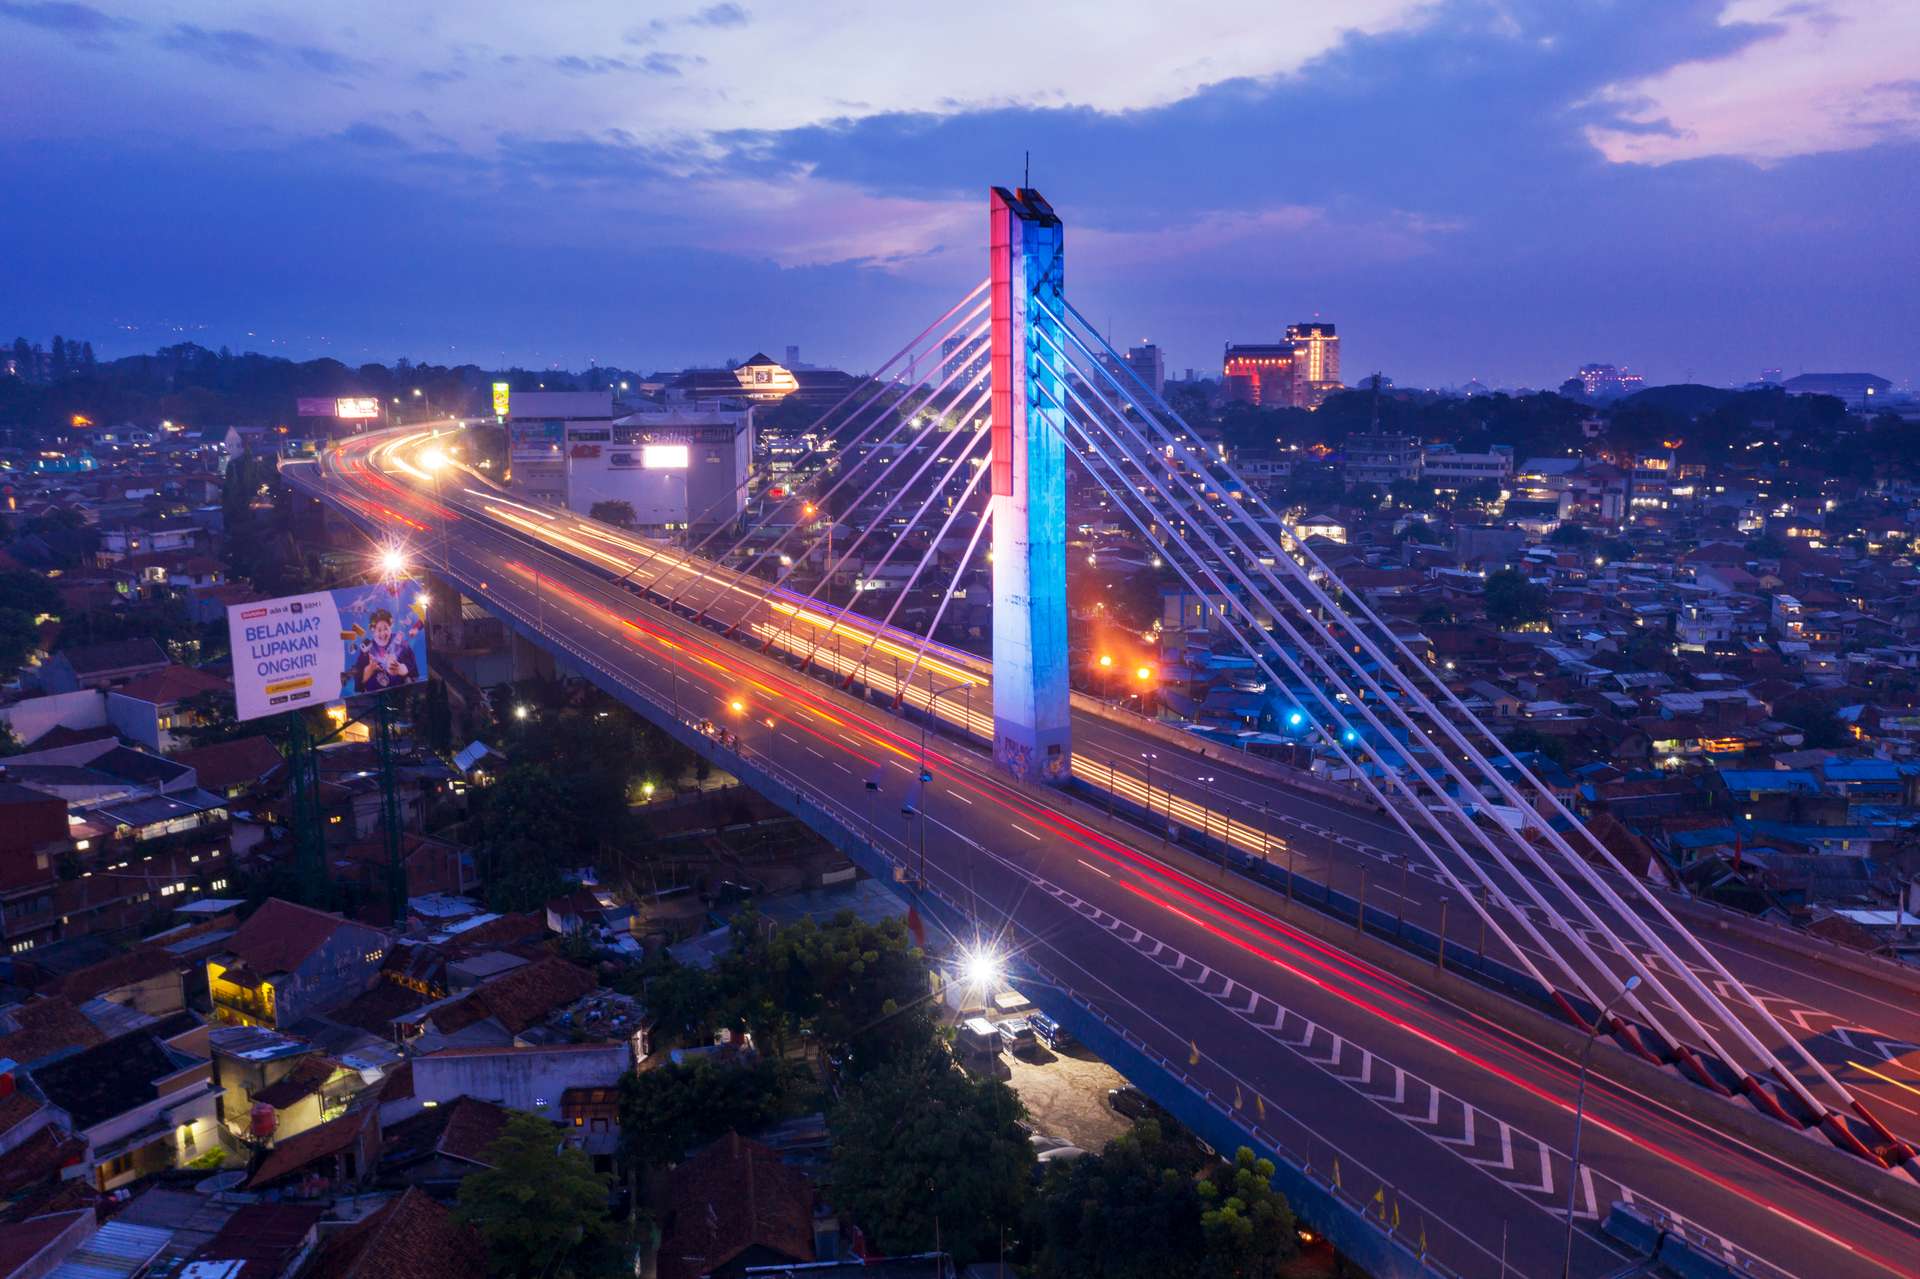 Jembatan Ikonik Populer - Jembatan di Indonesia Paling Terkenal